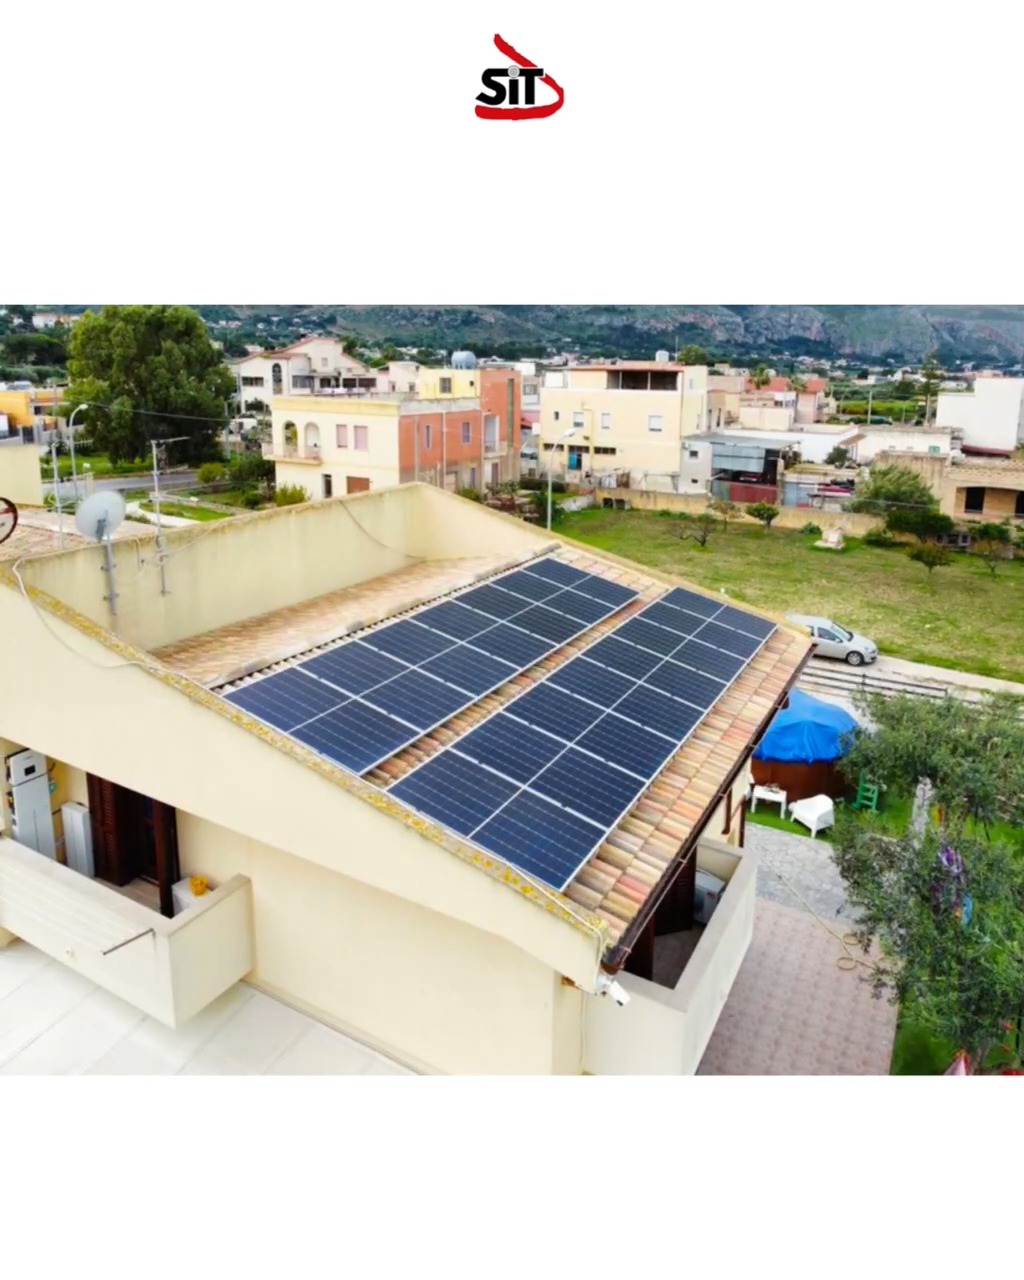 ✅ Ultime installazioni di impianti fotovoltaici by Sit Impianti 🏠🌞💡🥰

➡